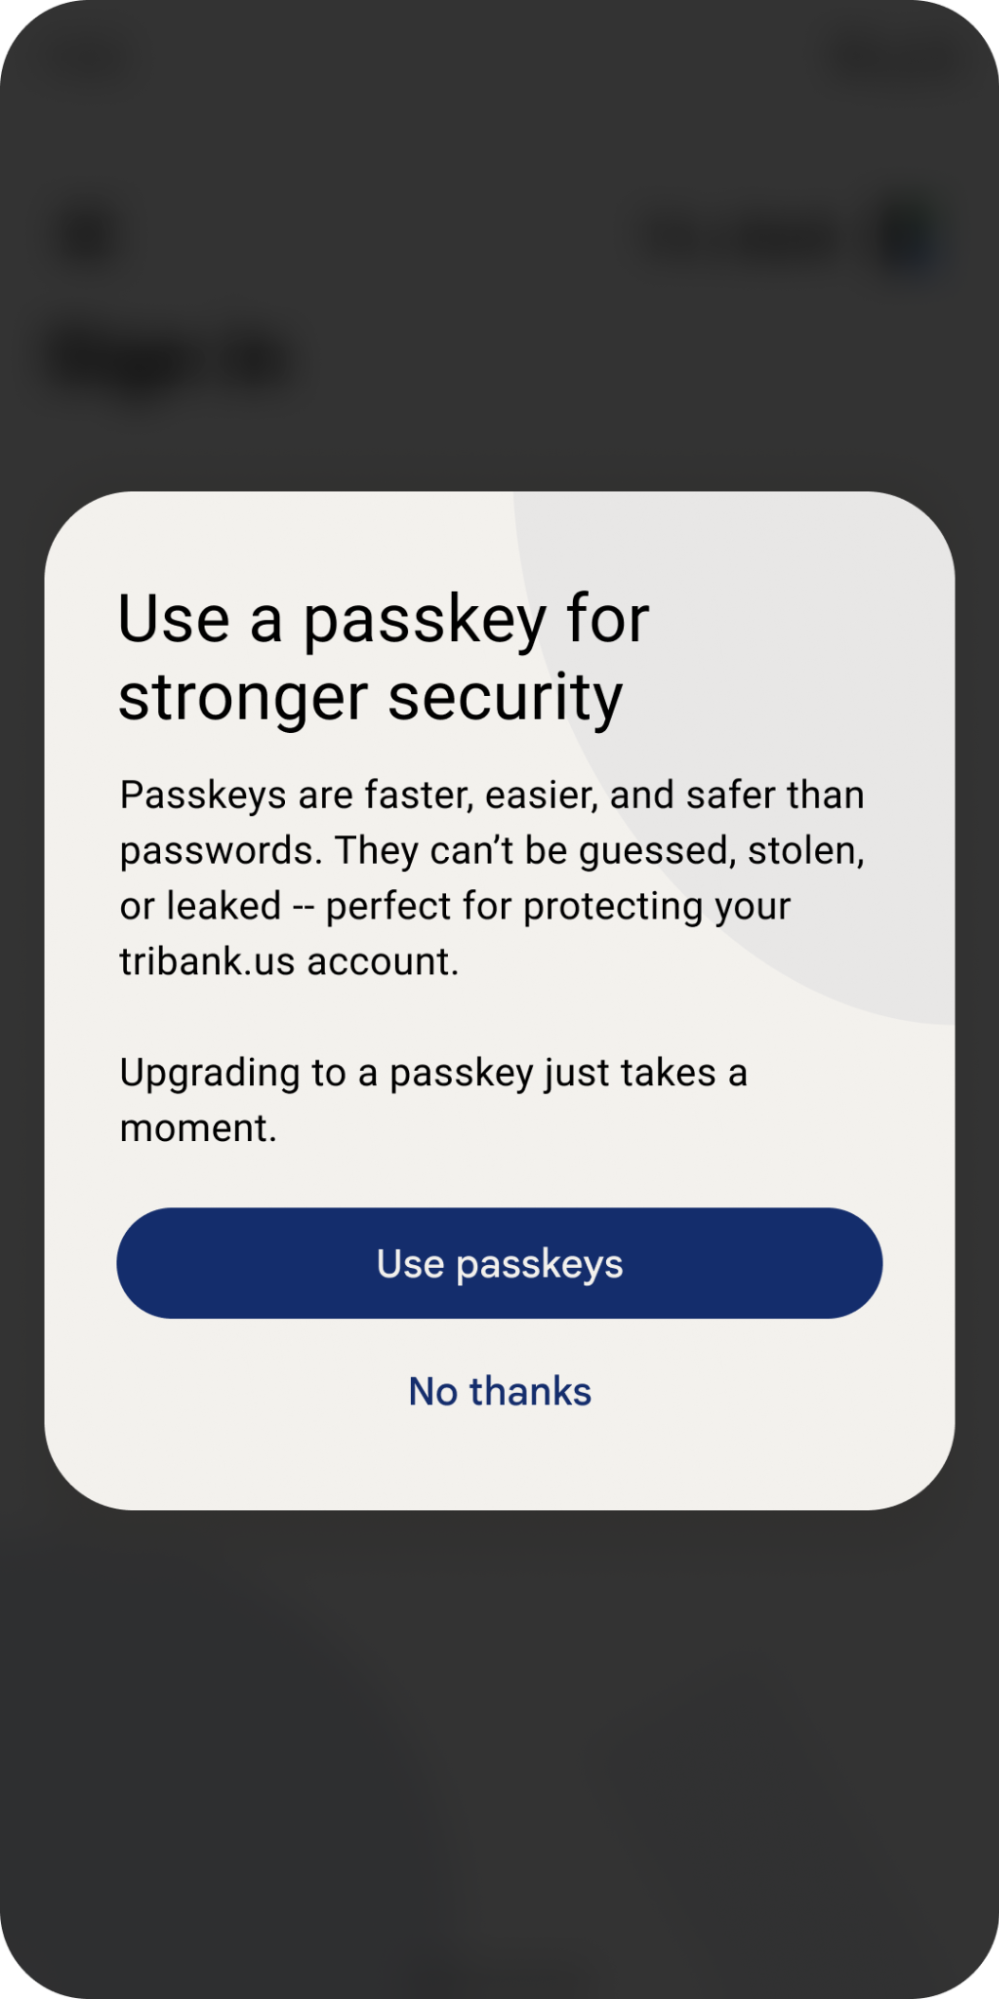 ป๊อปอัปที่ให้ผู้ใช้ใช้พาสคีย์เพื่อให้รหัสผ่านปลอดภัยและรวดเร็วยิ่งขึ้น